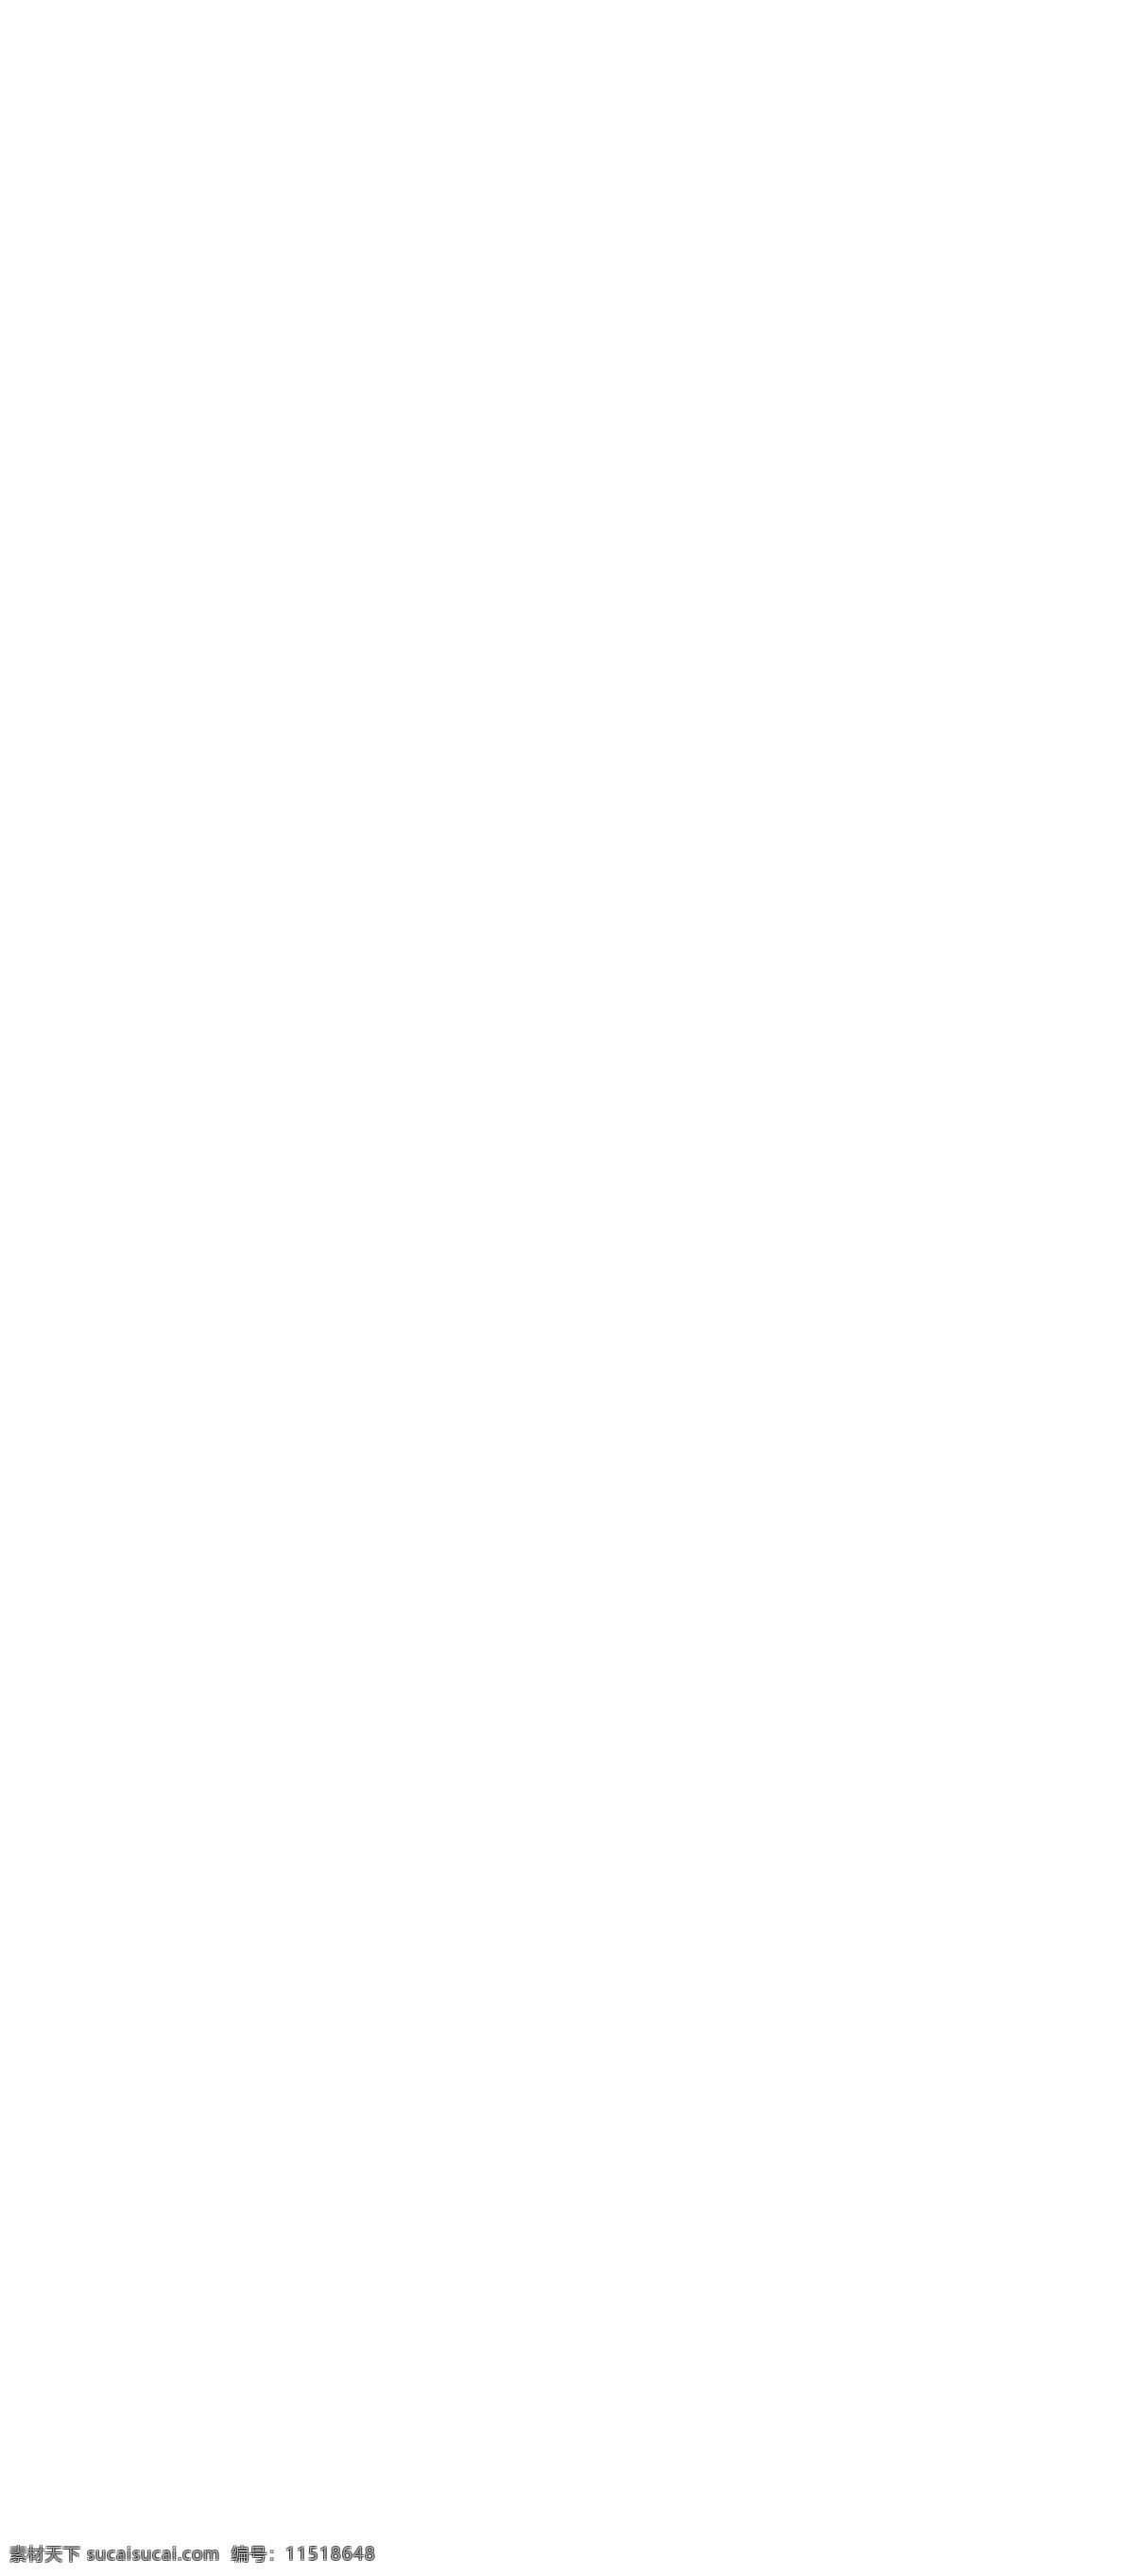 2012 x展架 北京现代 福字 购车 广告设计模板 奖品 门贴 新春 特惠 送礼 x 展架 年货 展板模板 源文件 psd源文件